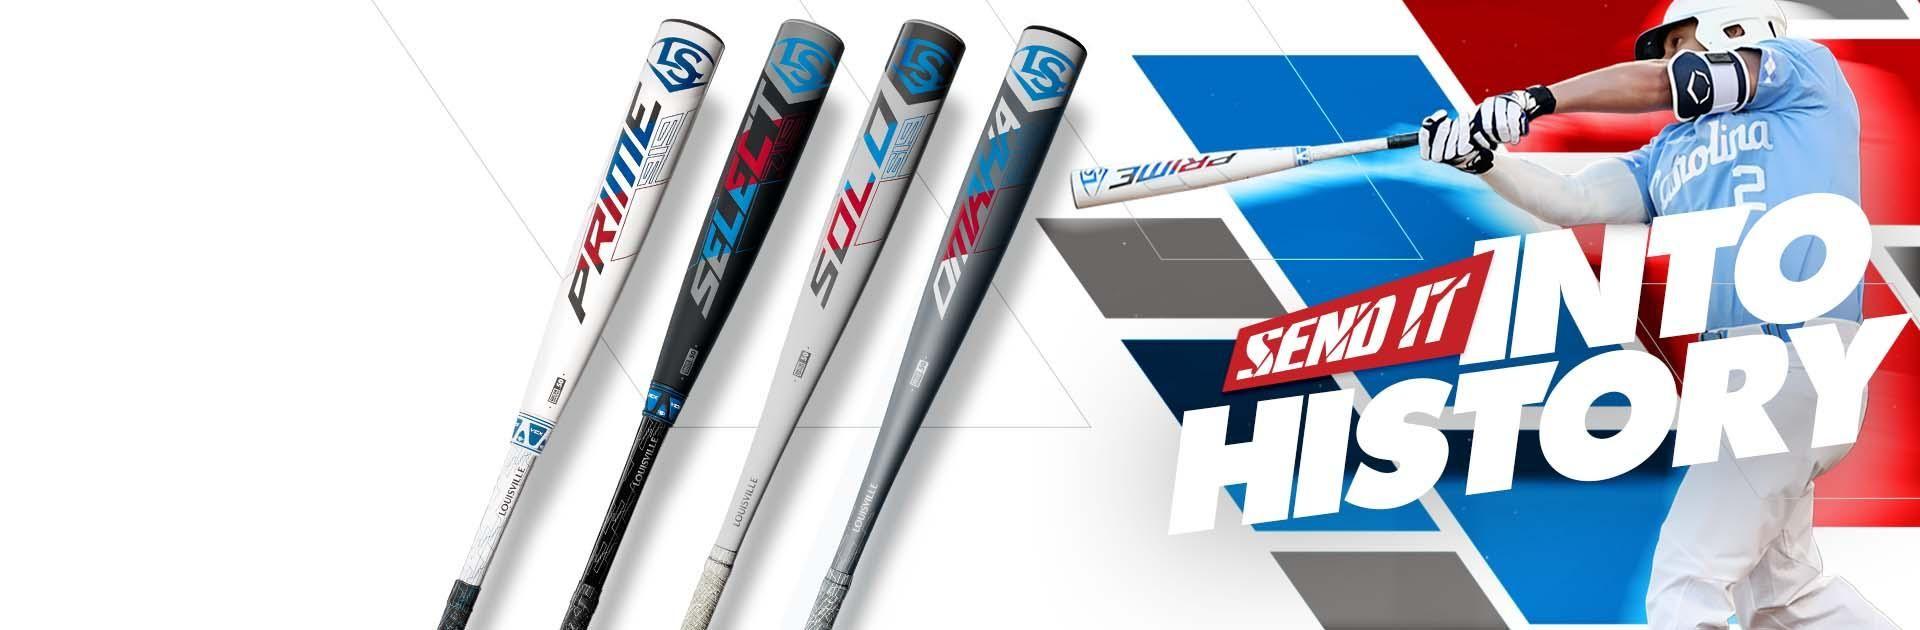 Cool Baseball Bat Logo - Louisville Slugger® Official Online Store - Shop Baseball, Fastpitch ...